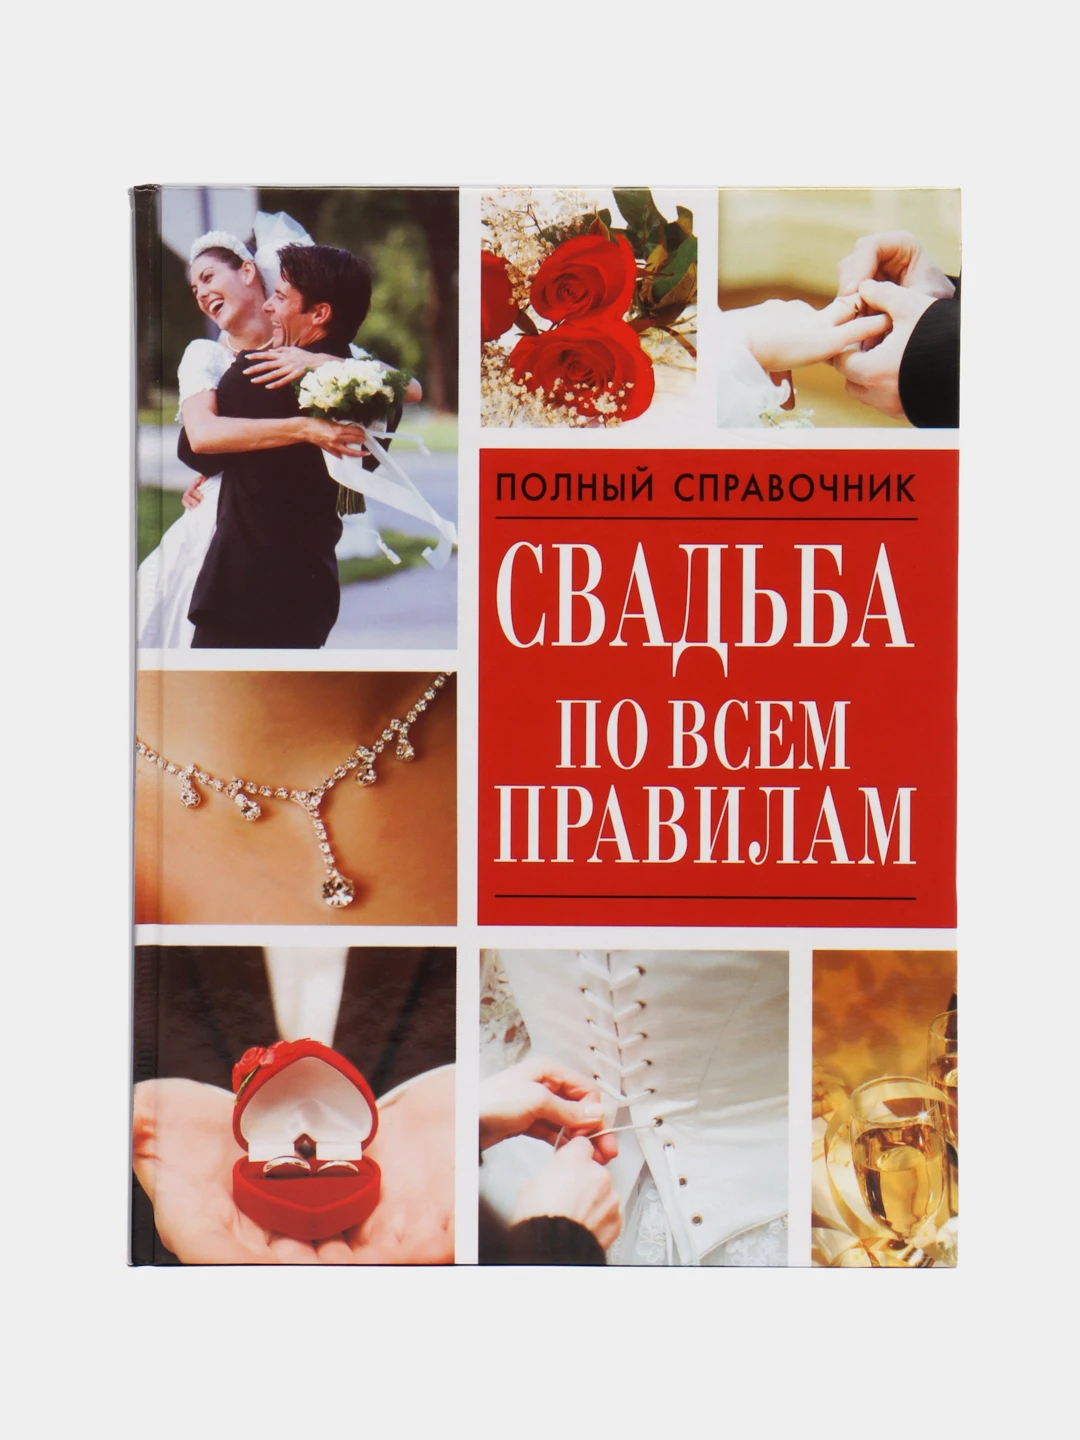 Читать книгу свадьбе быть. Книги про свадьбу. Красная свадьба книга.